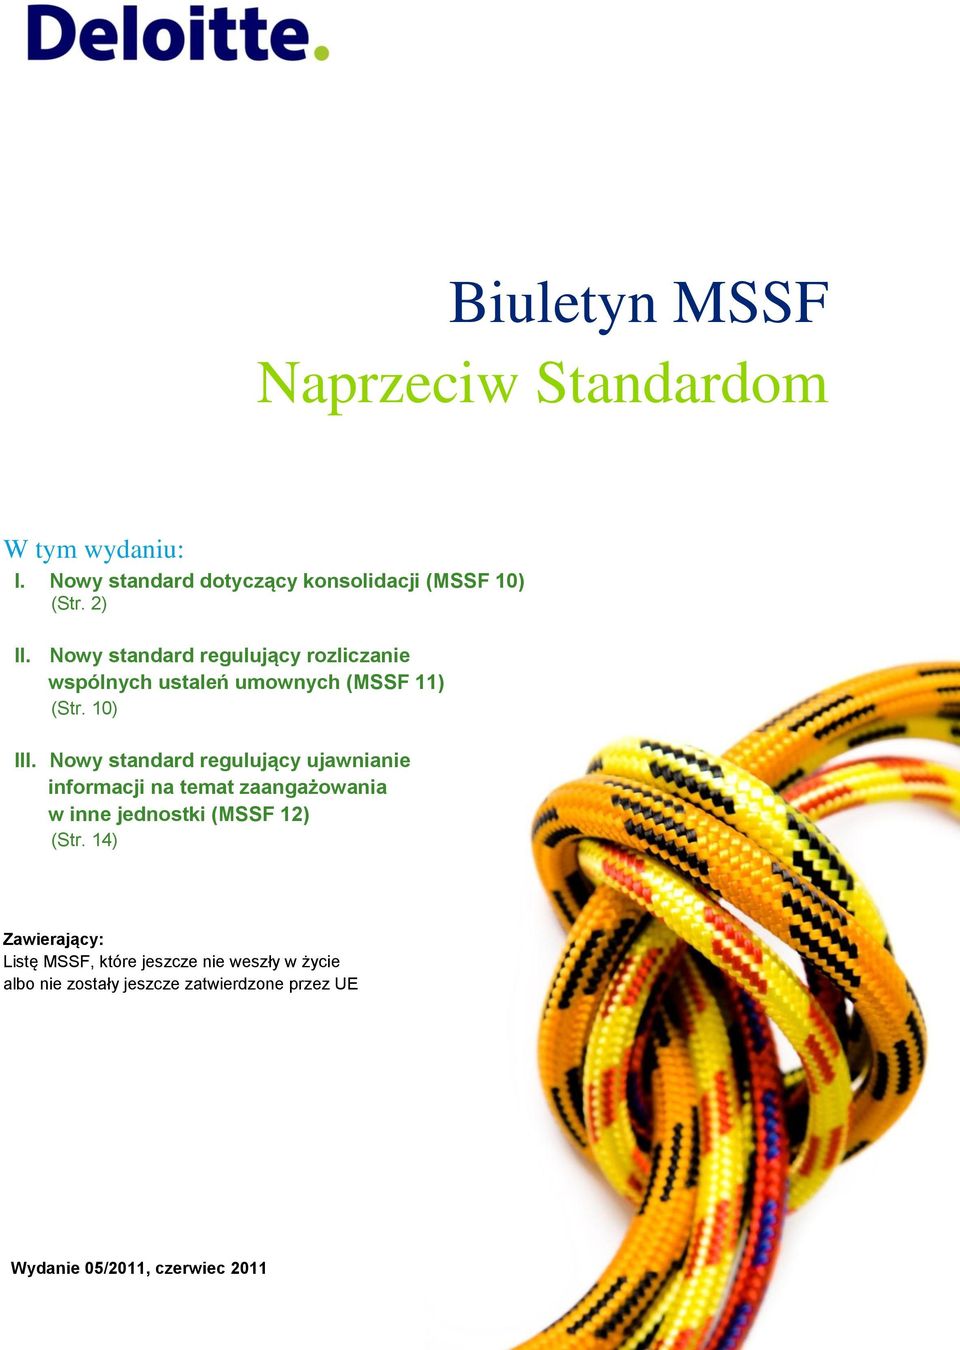 Nowy standard regulujący ujawnianie informacji na temat zaangażowania w inne jednostki (MSSF 12) (Str.